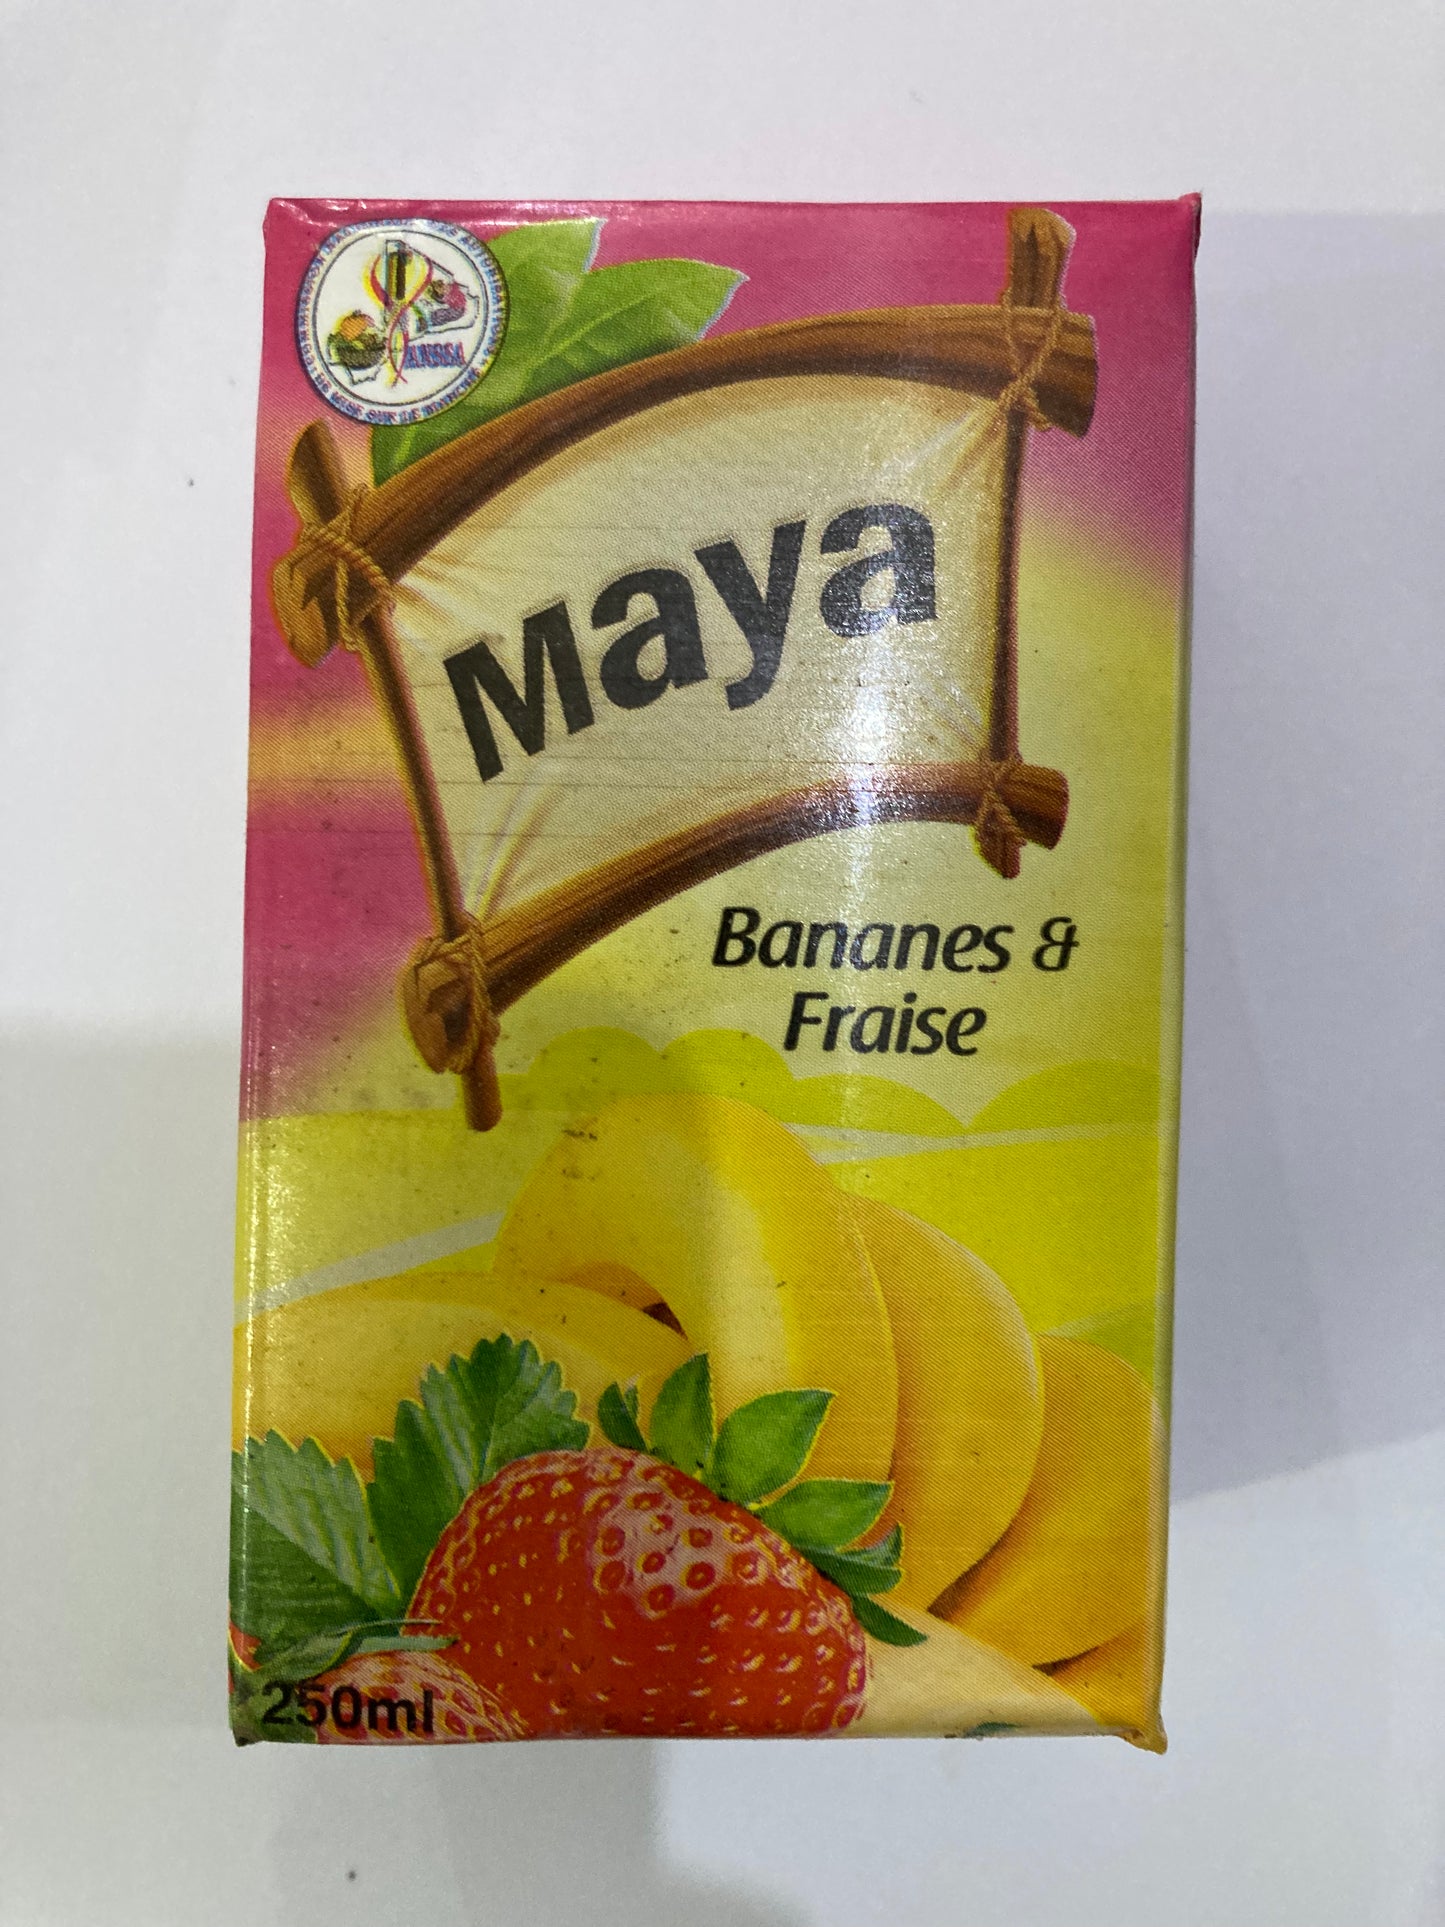 Maya Banane & Fraise 250mL DLC: 05-SEPT24